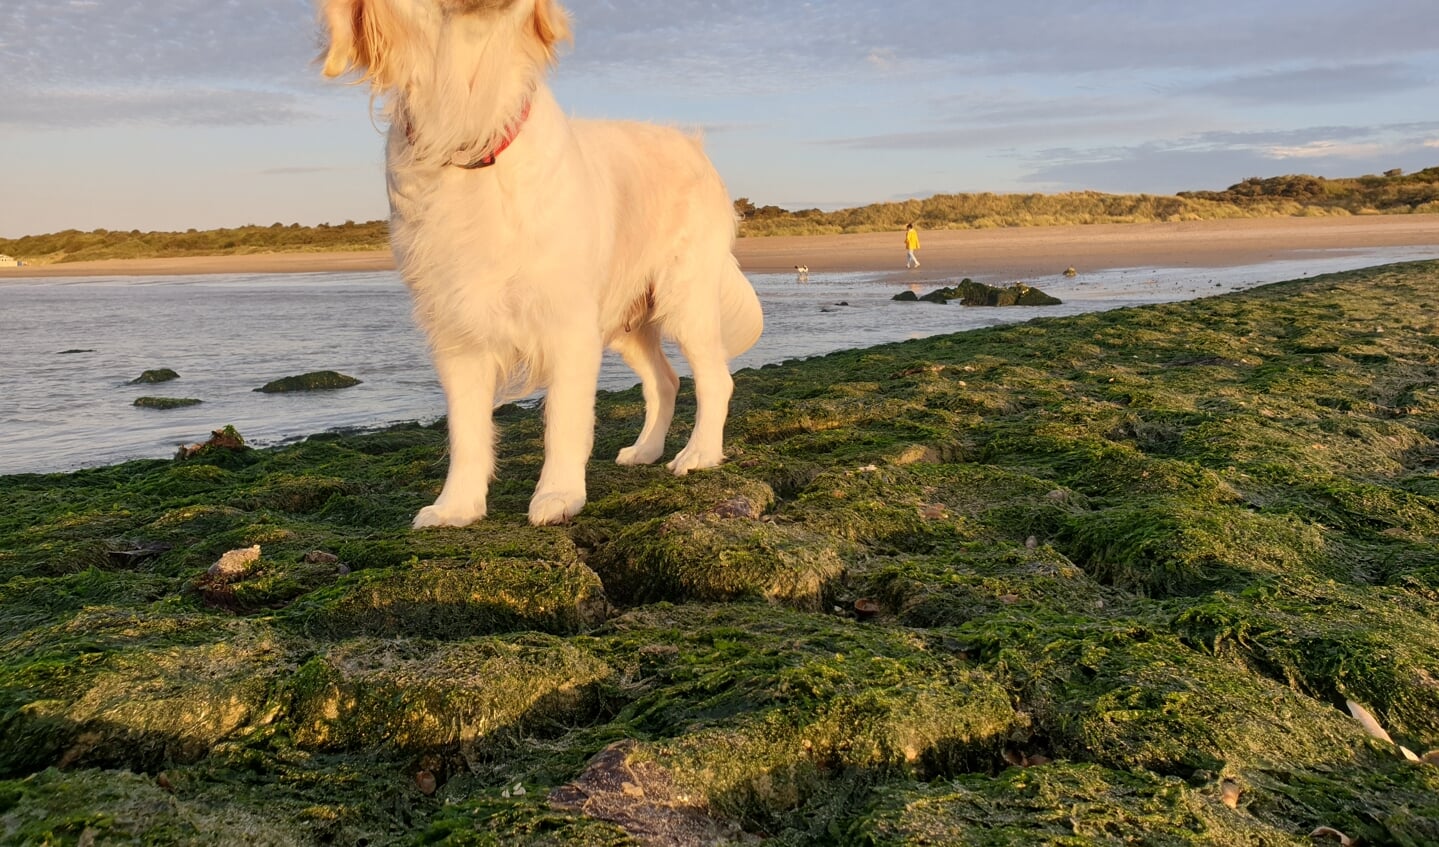 Daisy,  onze golden retriever van 3 jaar. Ze is 3 maanden geleden bevallen van 6 jongens. Nu in Zeeland bij het Grevelingenmeer even turen naar de zeemeeuwen.